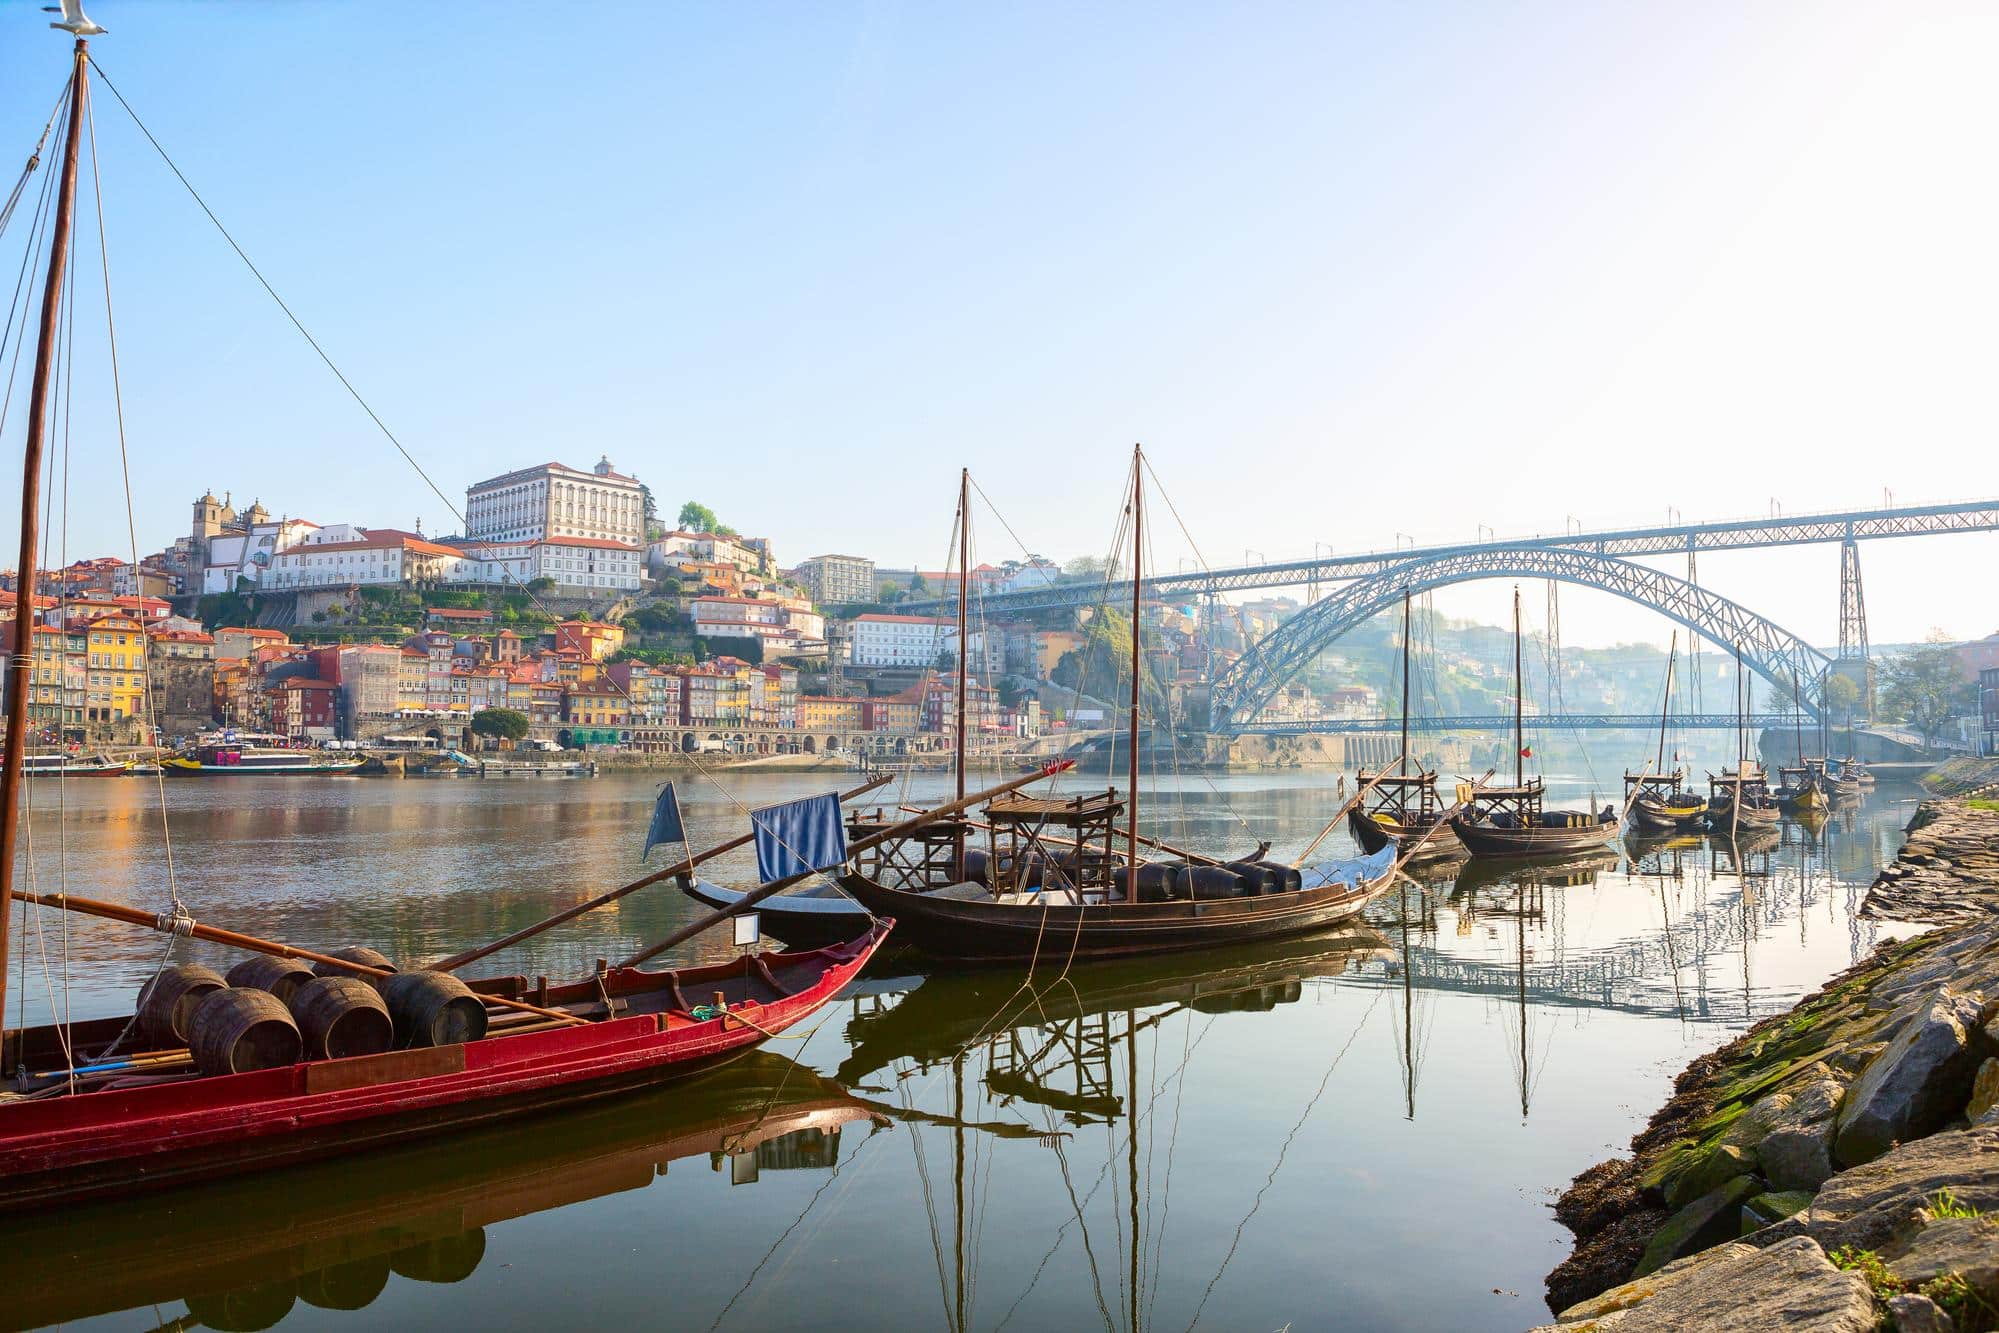 Transport de barils de vin en bateau traditionnel sur le fleuve Douro, Porto